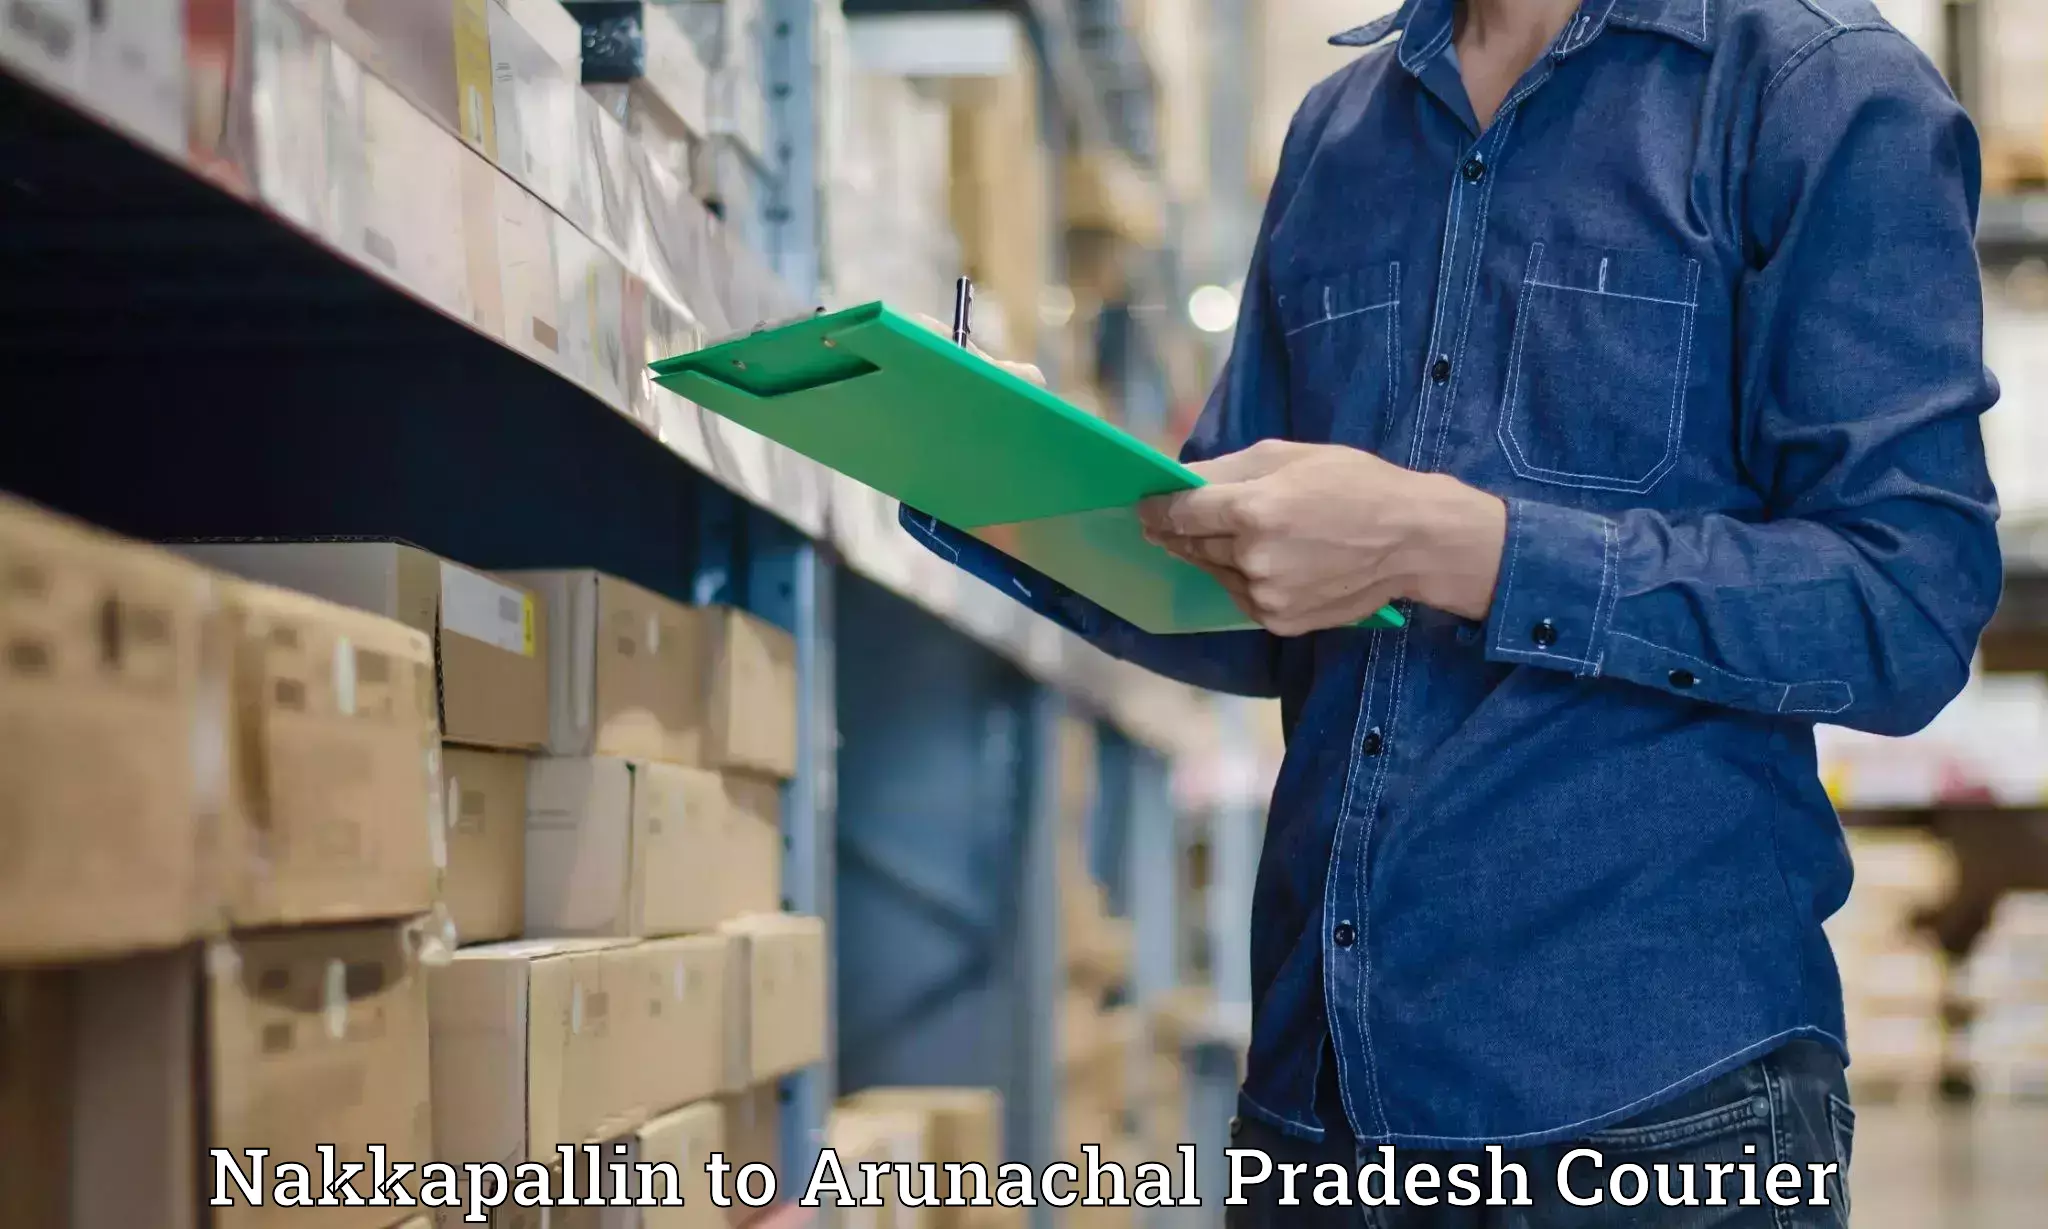 Efficient cargo handling Nakkapallin to Arunachal Pradesh